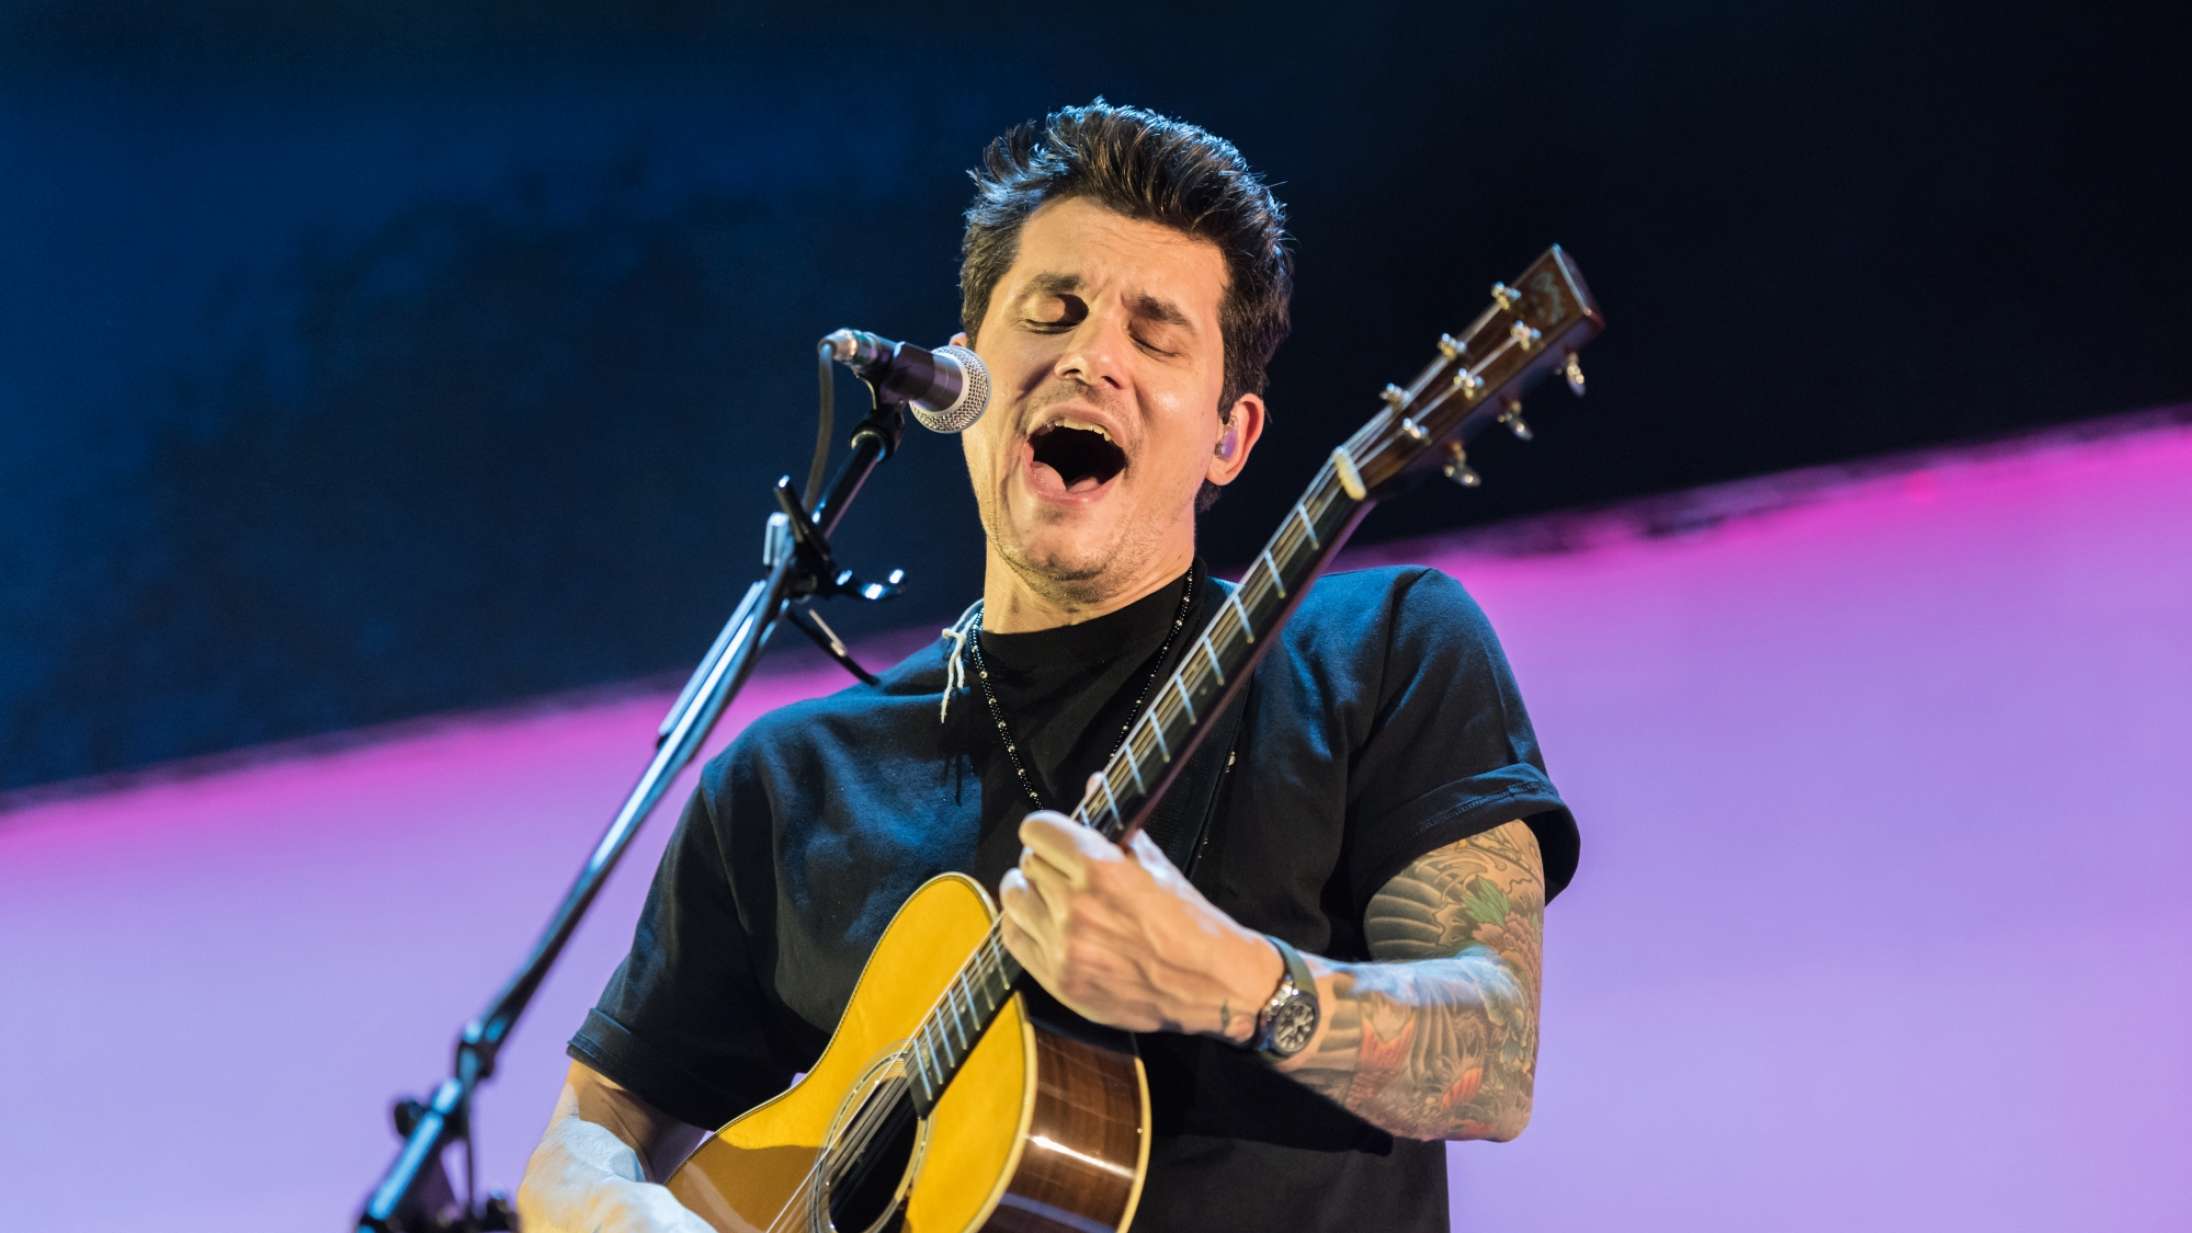 John Mayer indspiller TikTok-sang efter komisk parodi om yndlingshotdogs